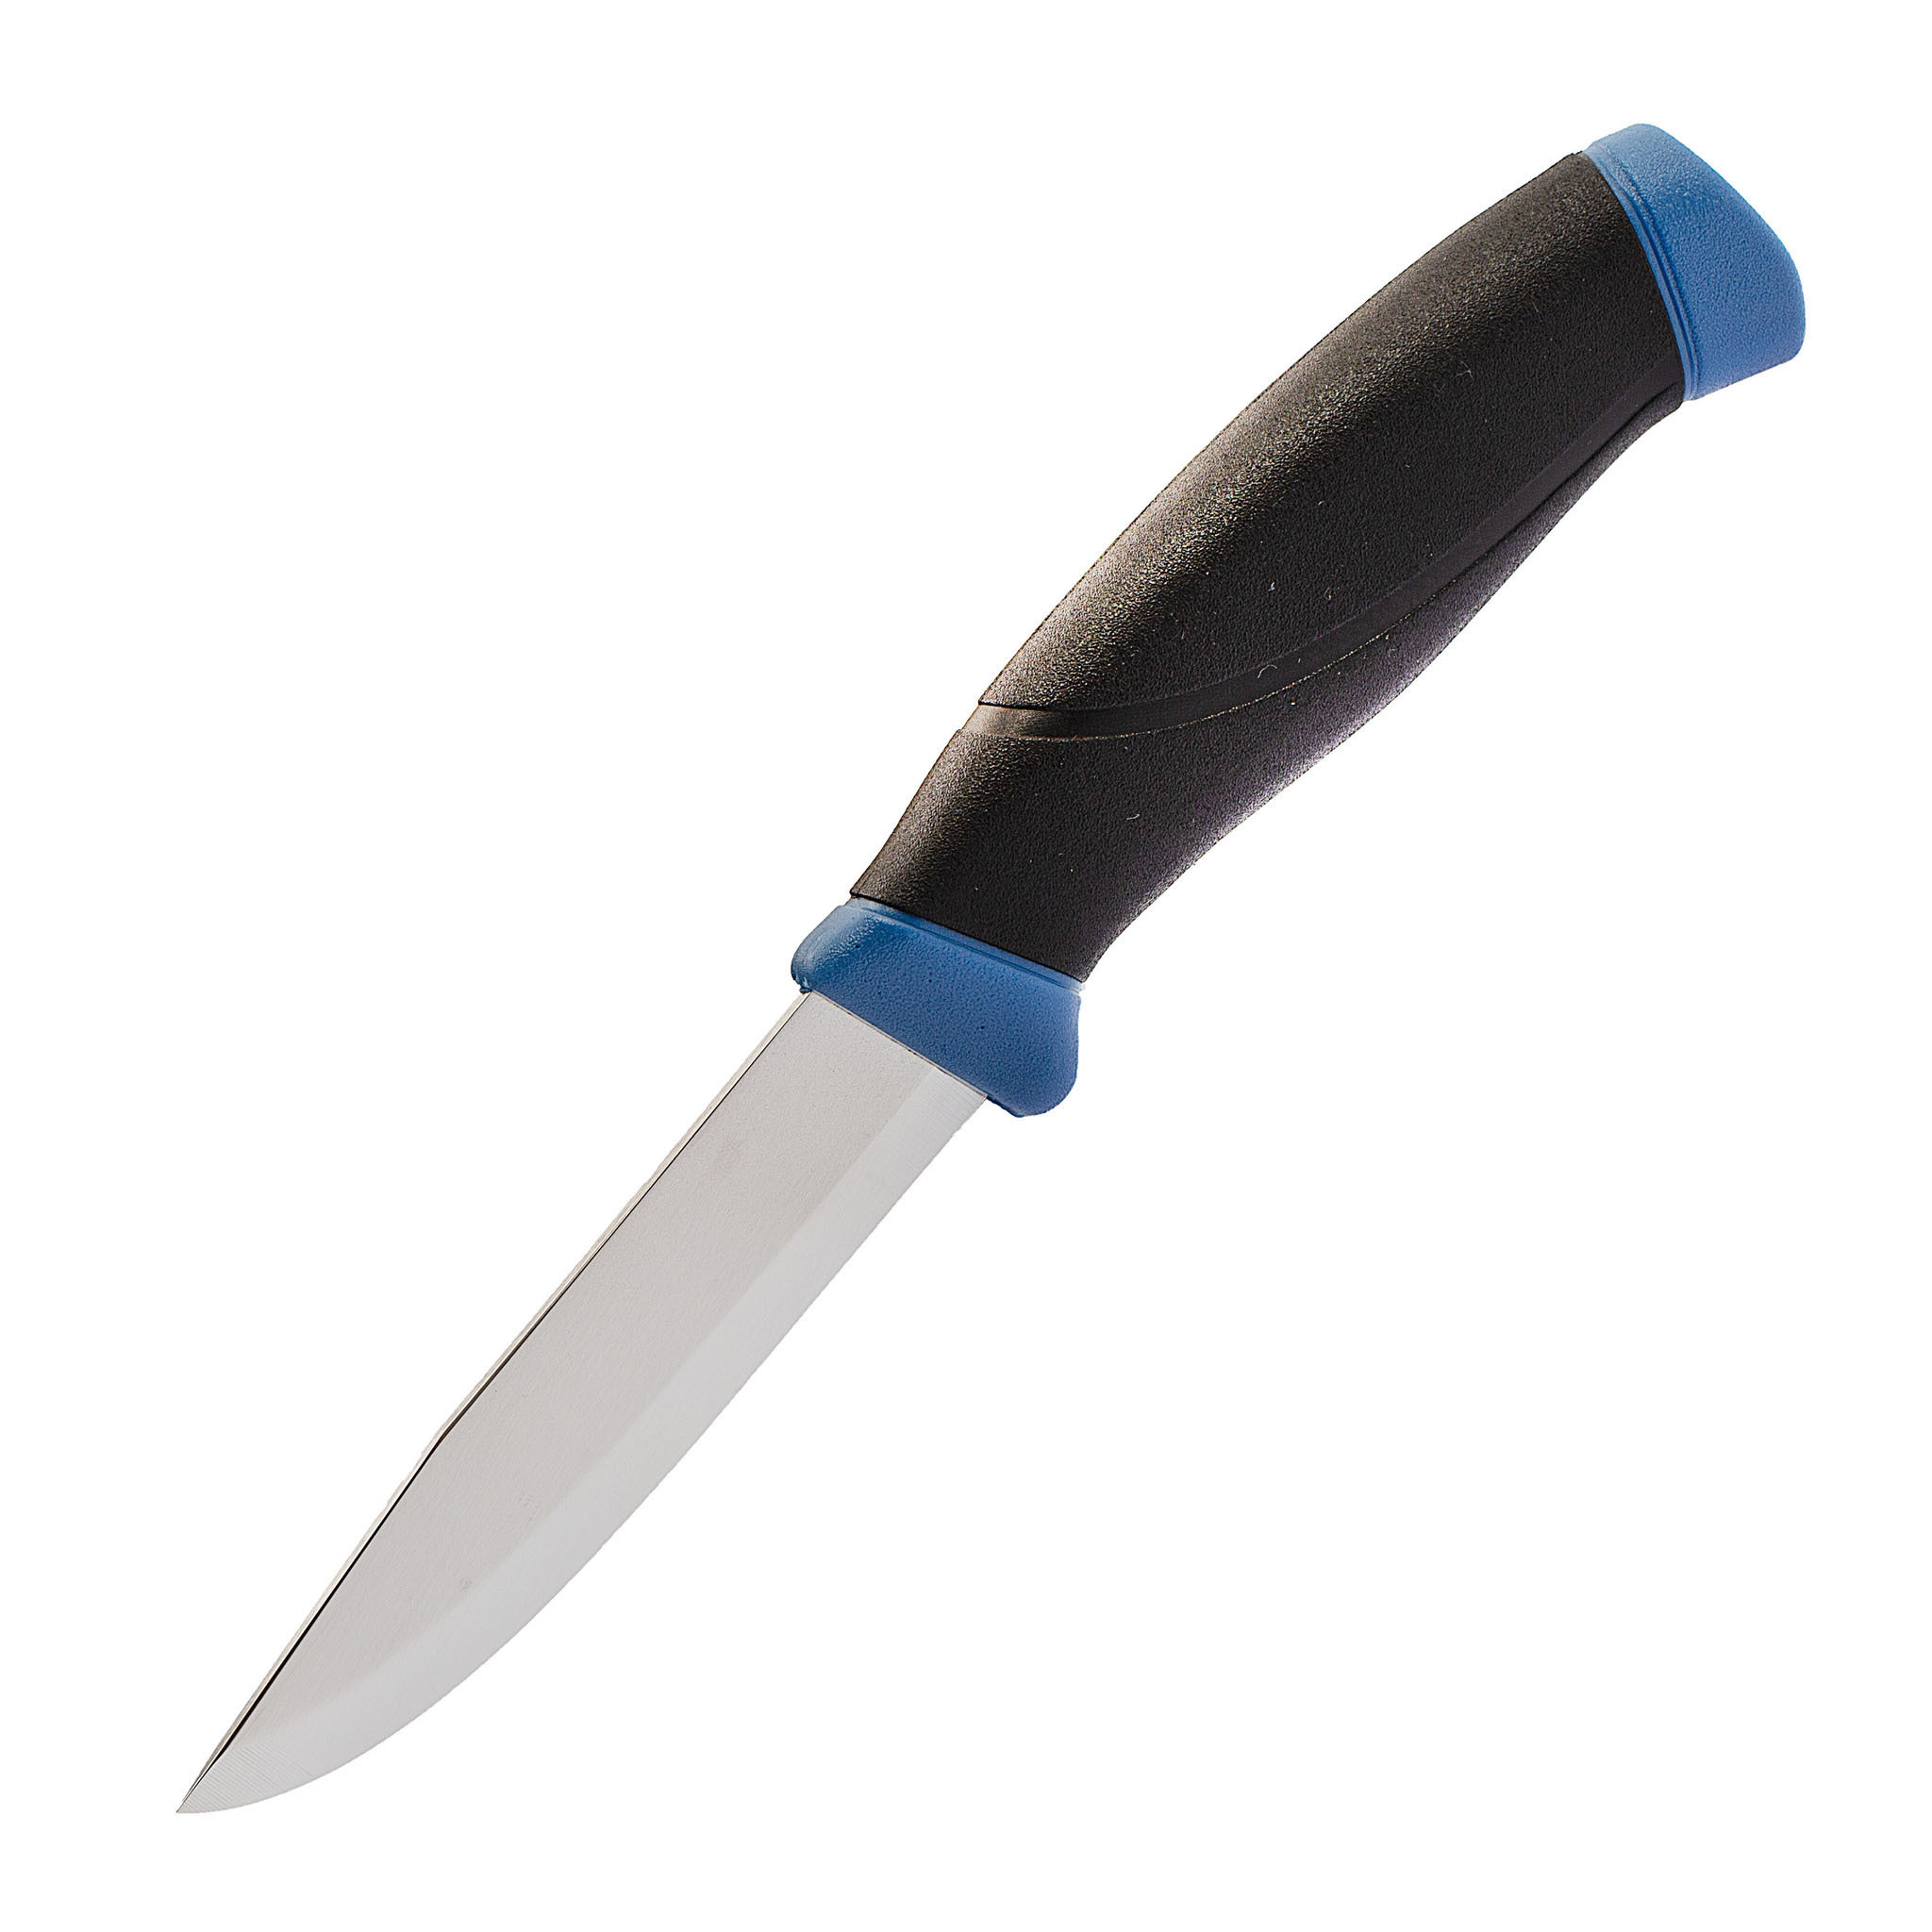 Нож с фиксированным лезвием Morakniv Companion Navy Blue, сталь Sandvik 12C27, рукоять резина/пластик